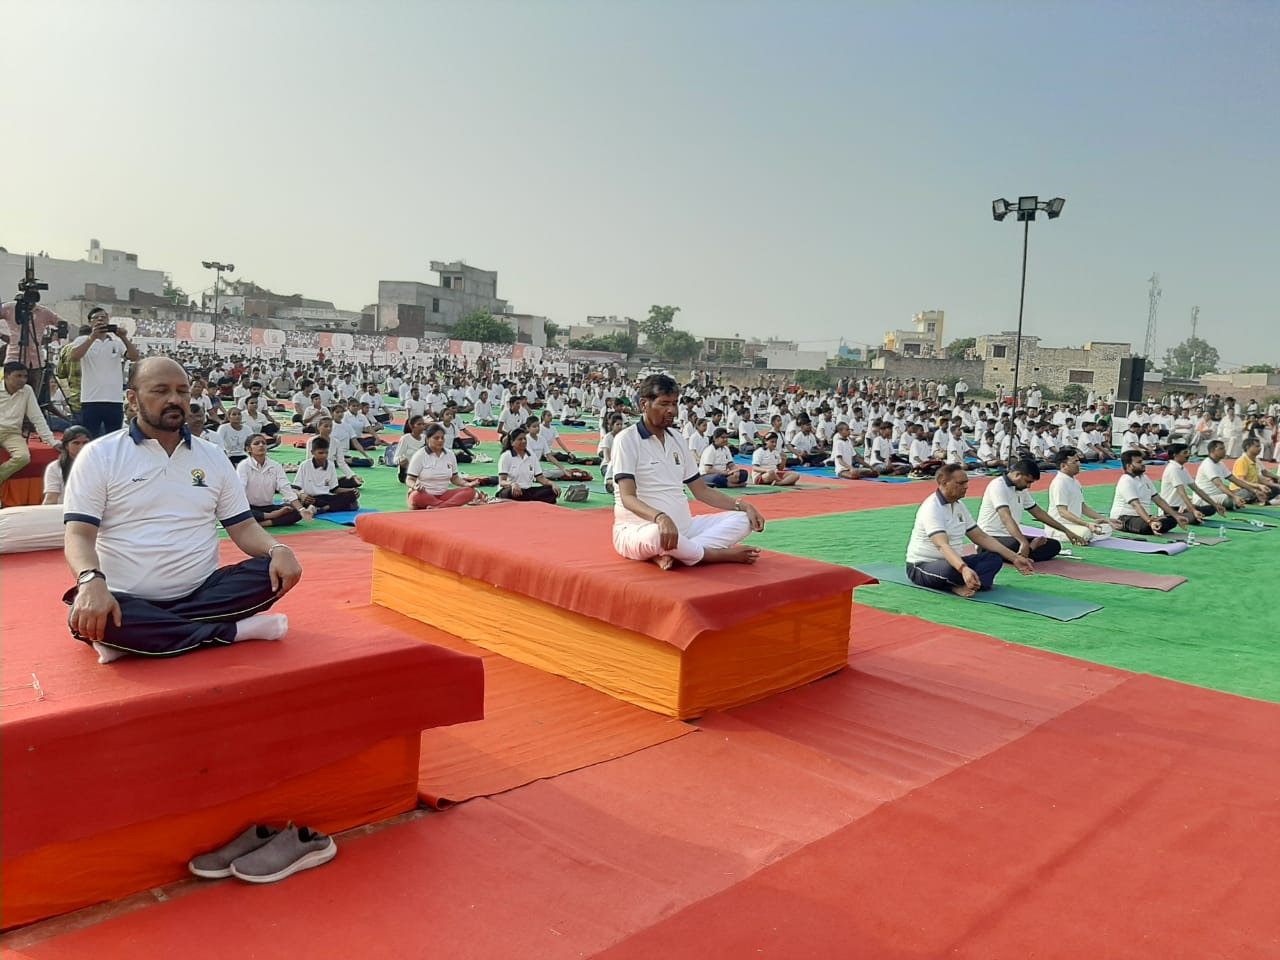 International Yoga Day 2022 : गंगा किनारे ऐतिहासिक और पौराणिक नगरी हस्तिनापुर बना योग दिवस का साक्षी